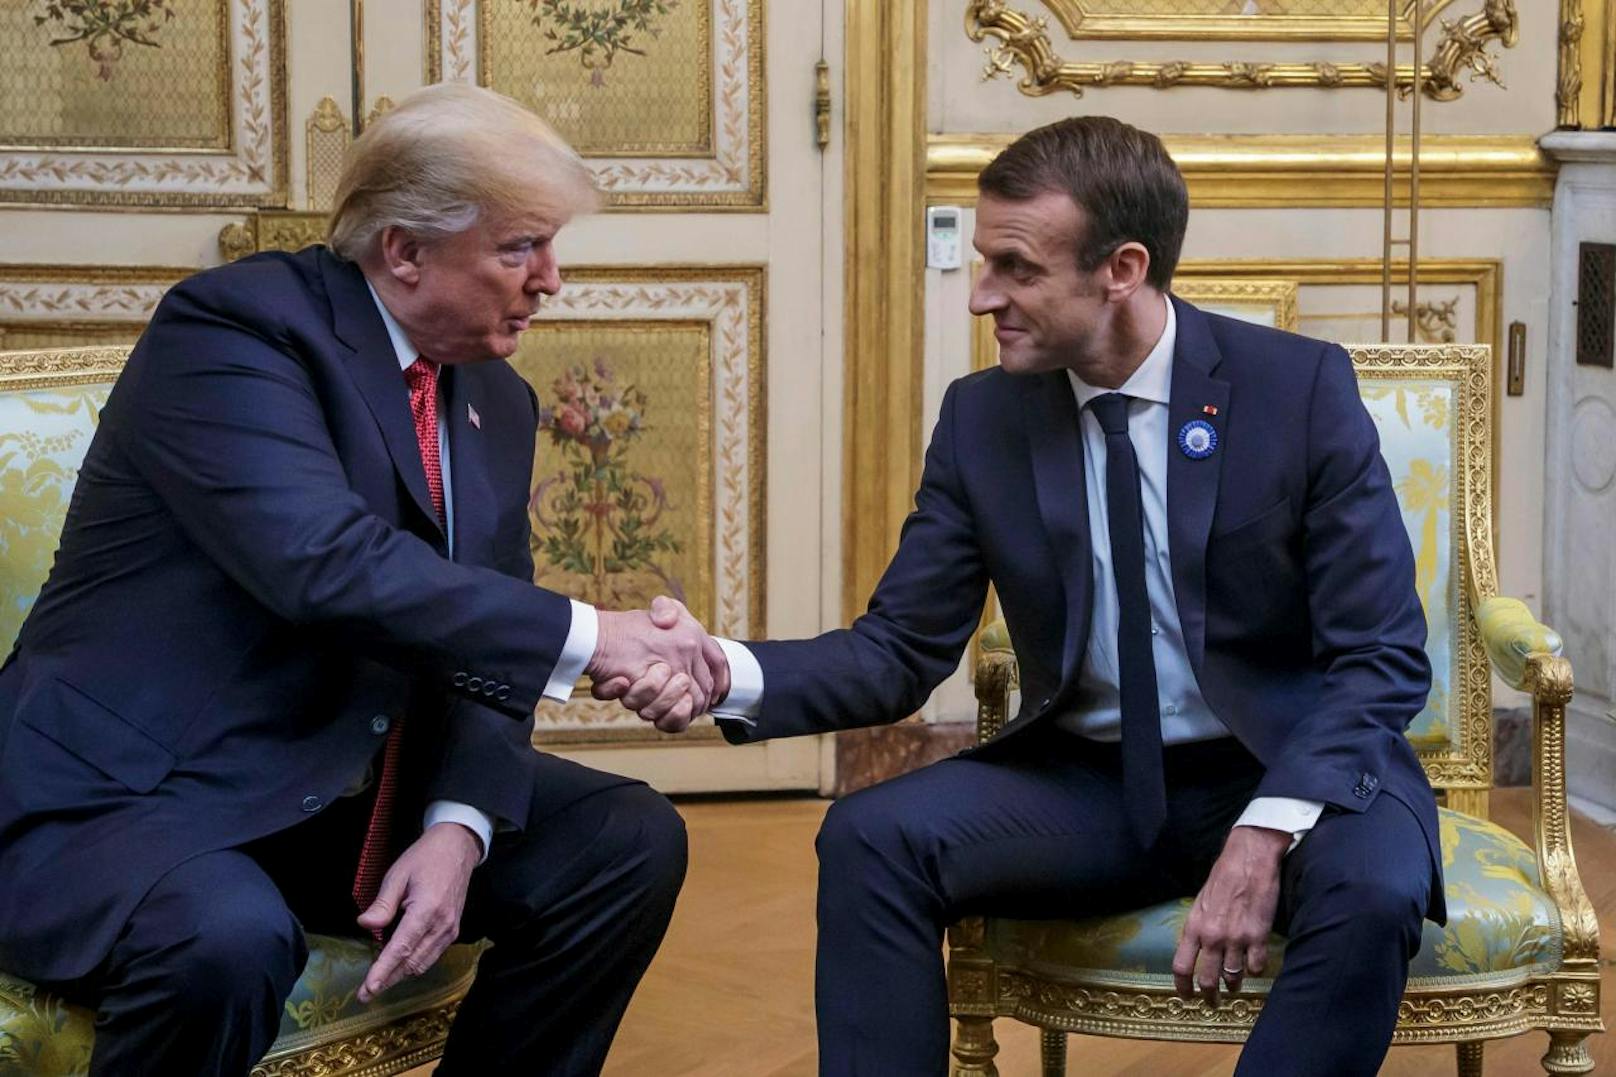 US-Präsident Donald Trump (l.) bei einem Treffen mit seinem französischen Amtskollegen Emmanuel Macron. Die beiden Präsidenten liefern sich immer wieder bizarre Handschlag-Duelle. So auch beim Treffen in Paris am 10. November. Macron "gewann" das Duell und zerquetschte Trumps Hand regelrecht.